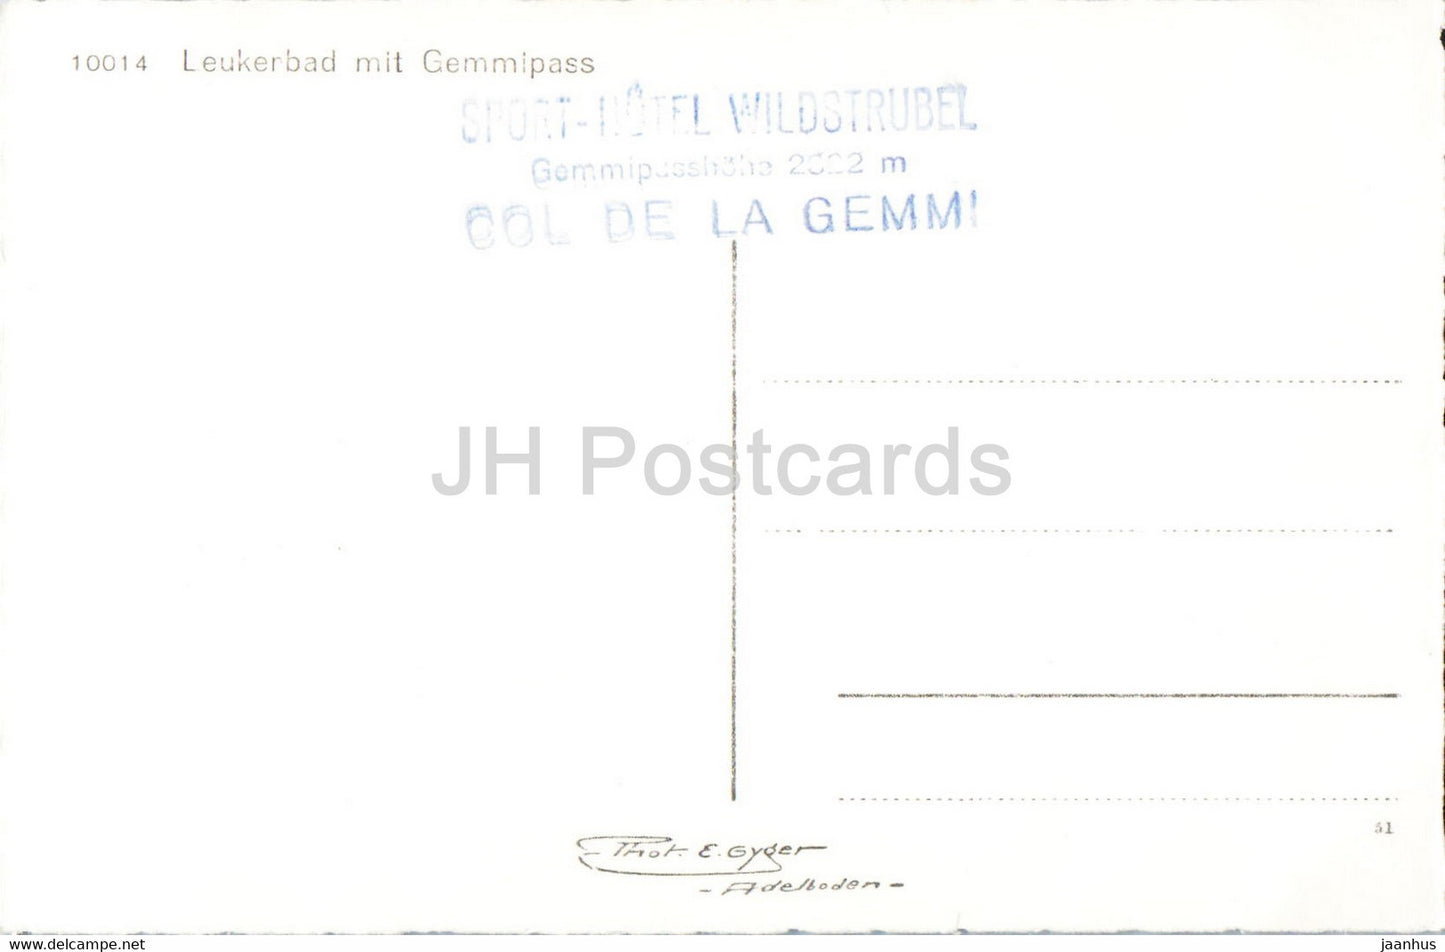 Leukerbad mit Gemmipass - 10014 - carte postale ancienne - Suisse - inutilisée